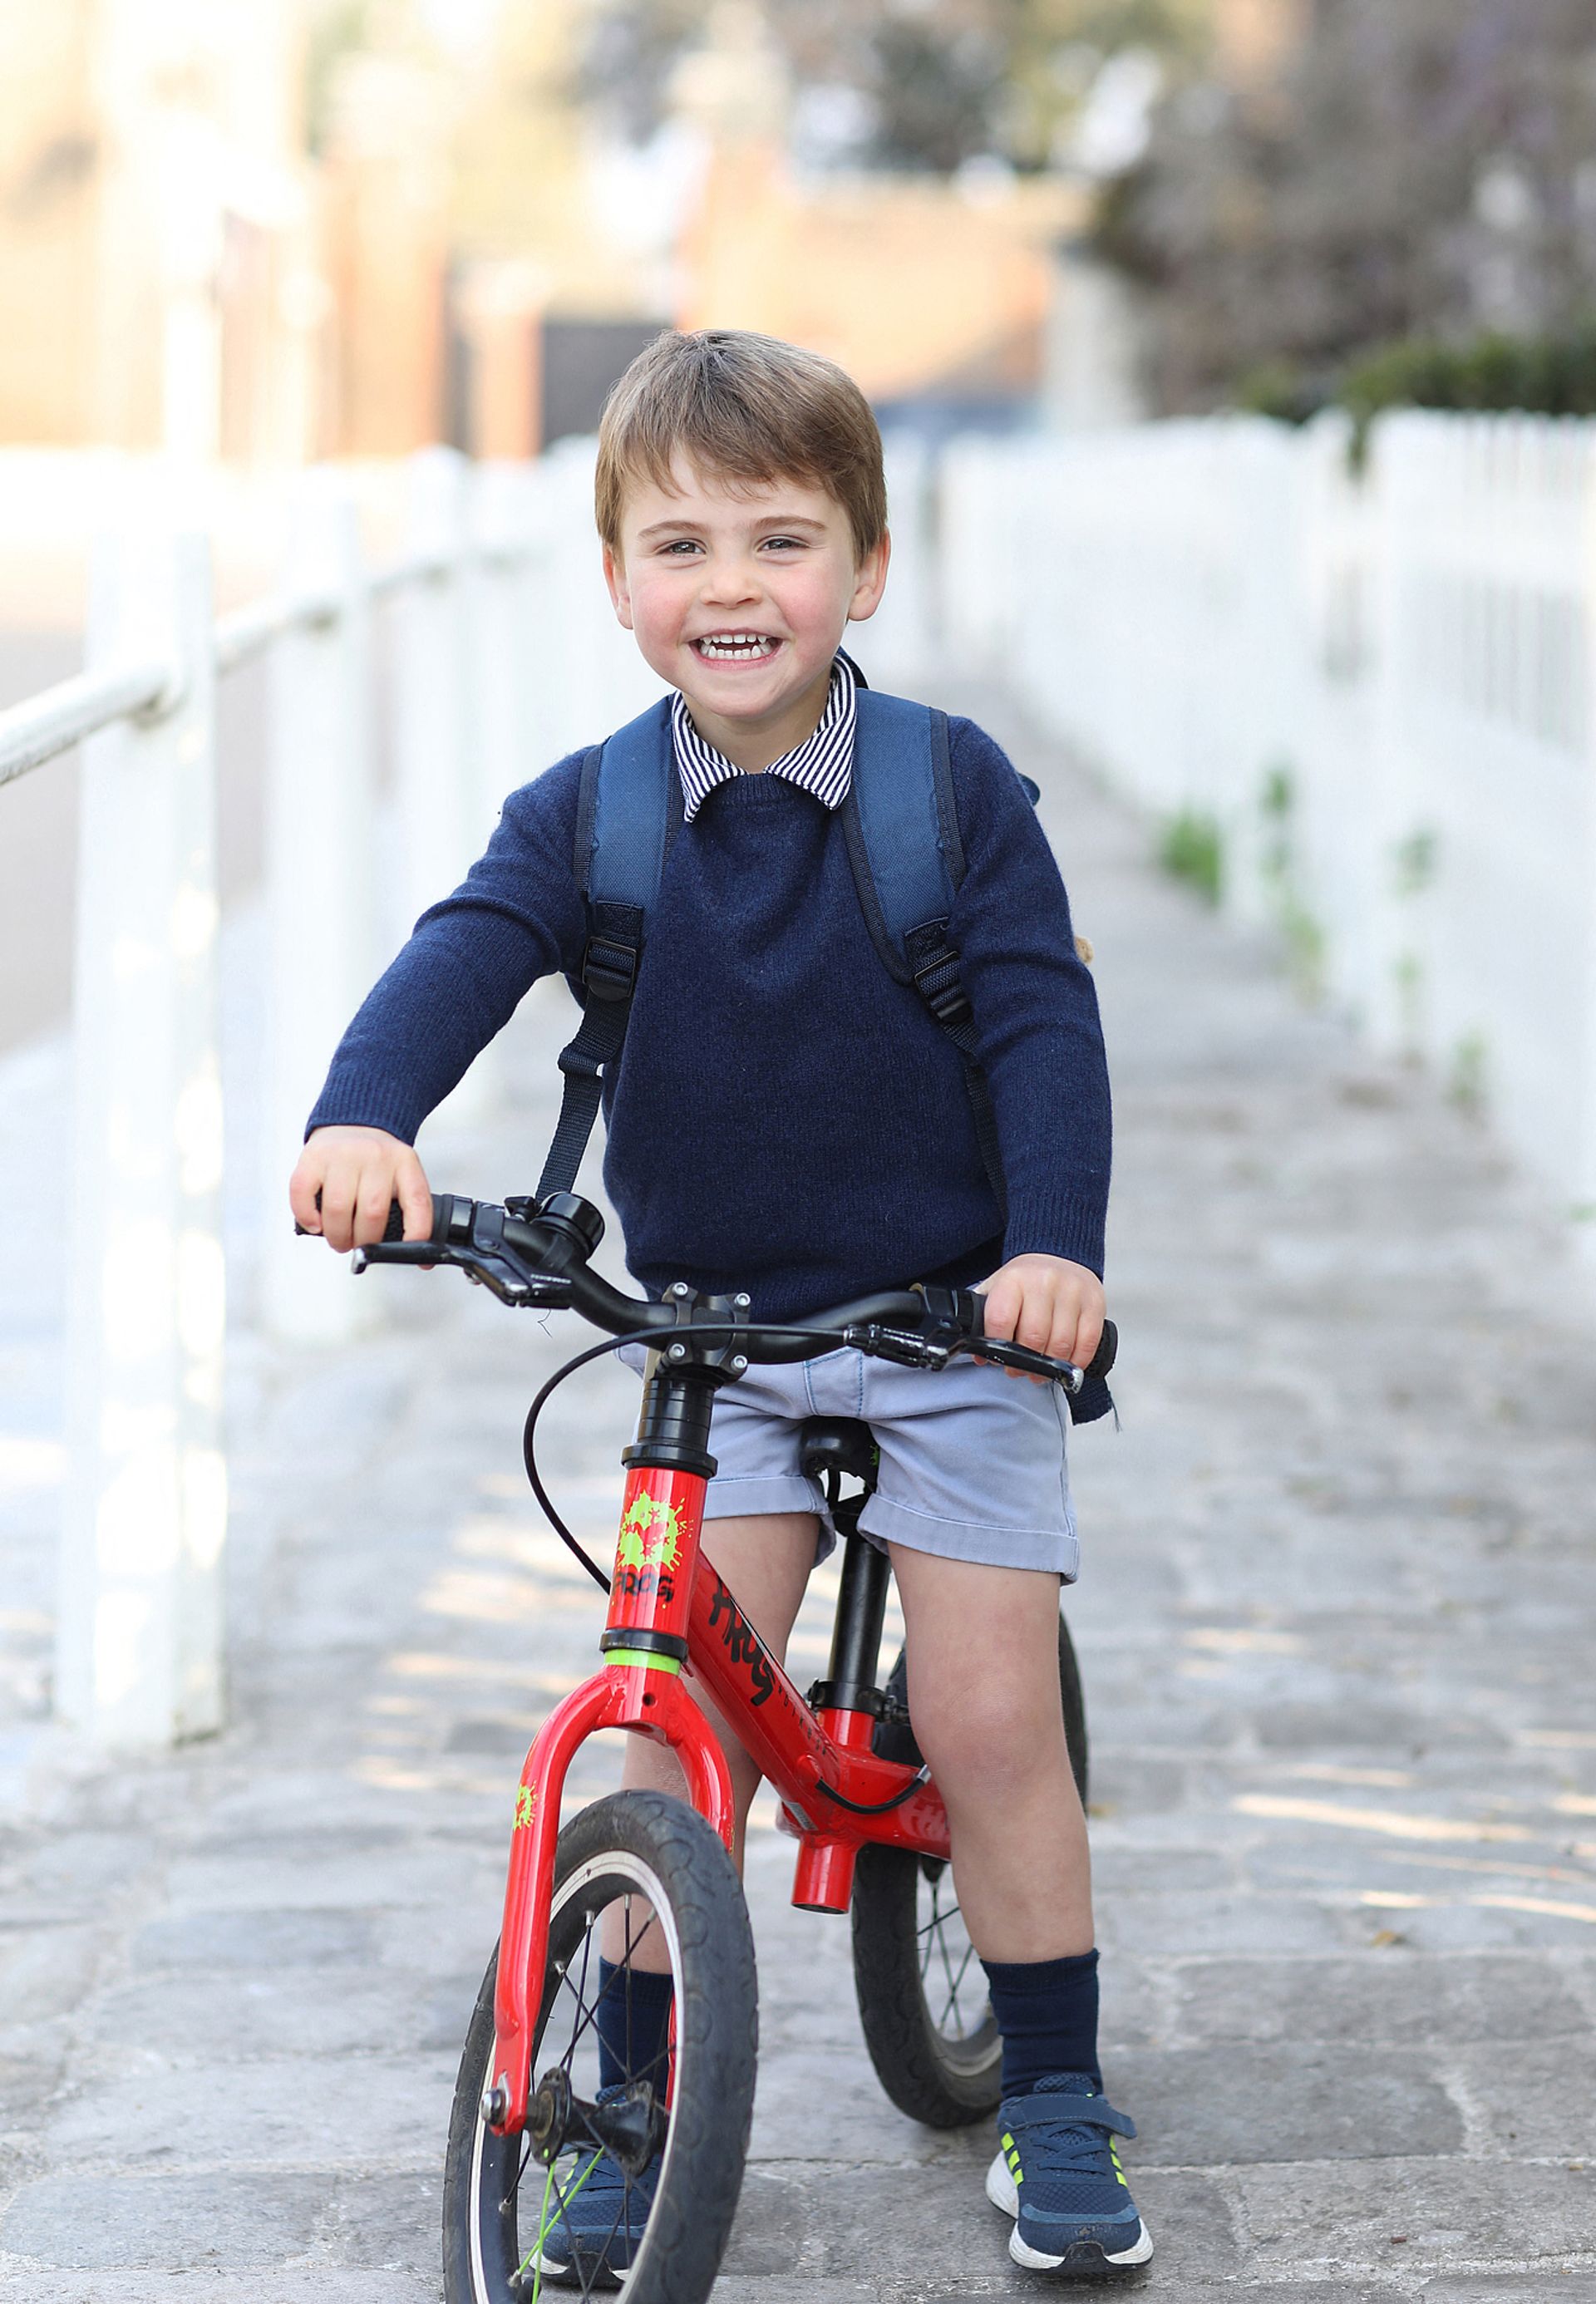 Prins_Louis_schooldag_fiets.jpg